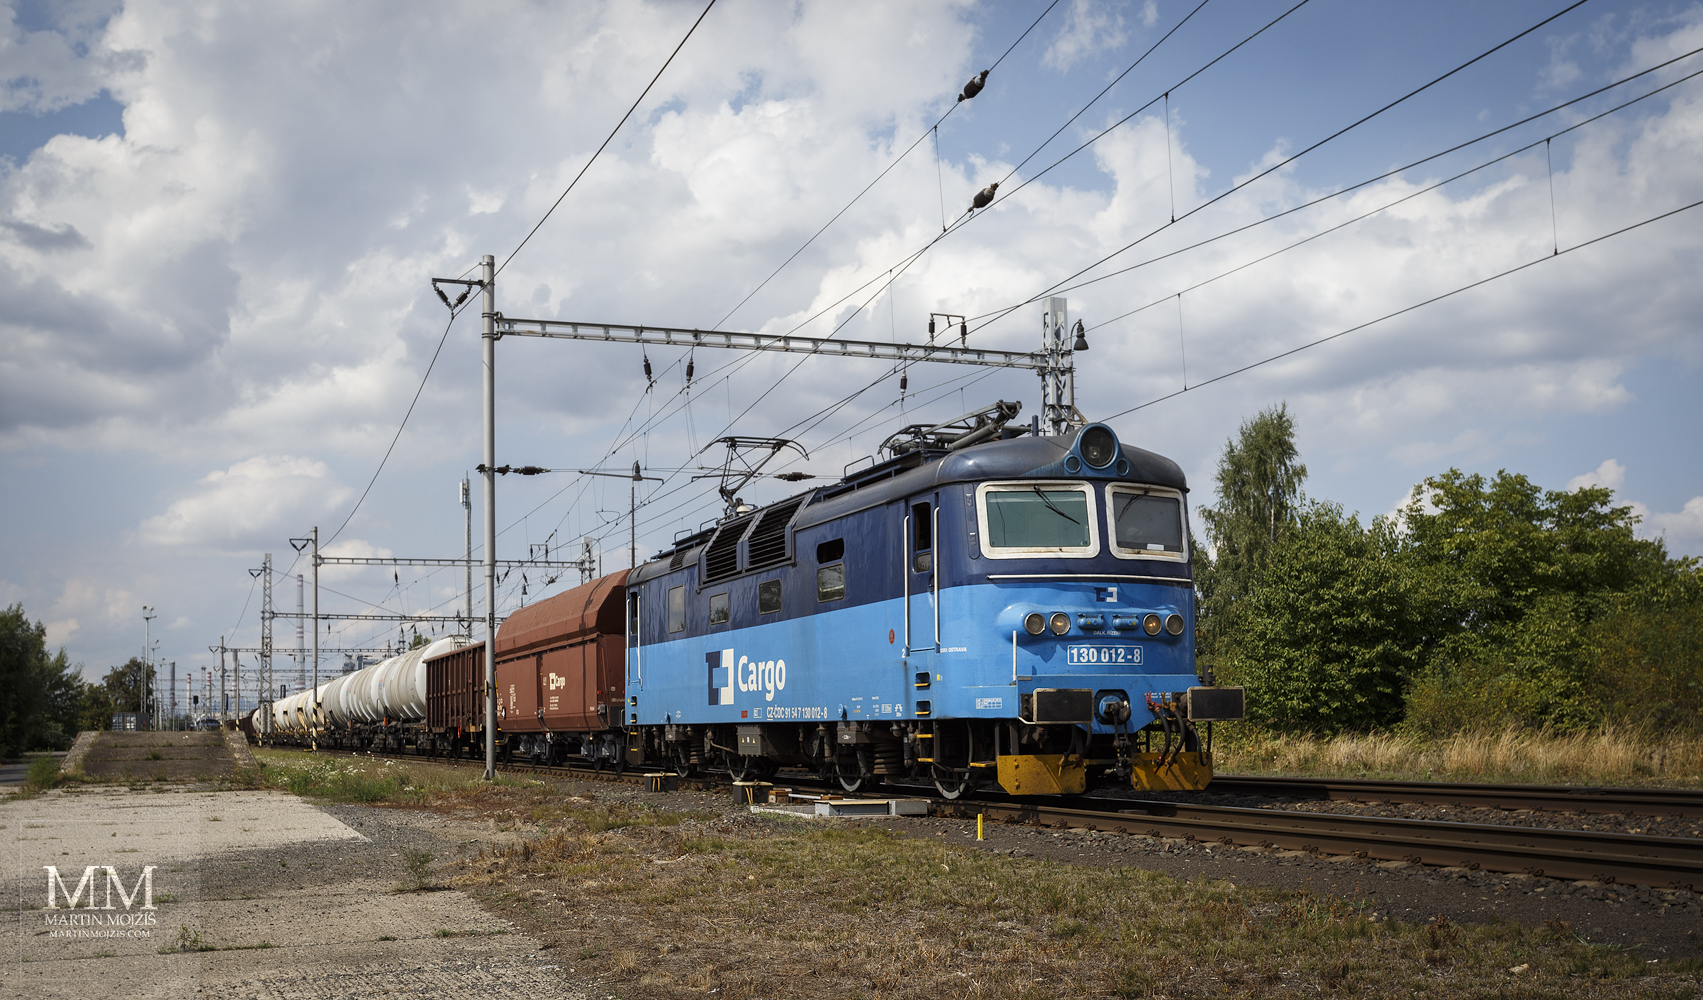 Elektrická lokomotiva 130 012-8 České dráhy Cargo.